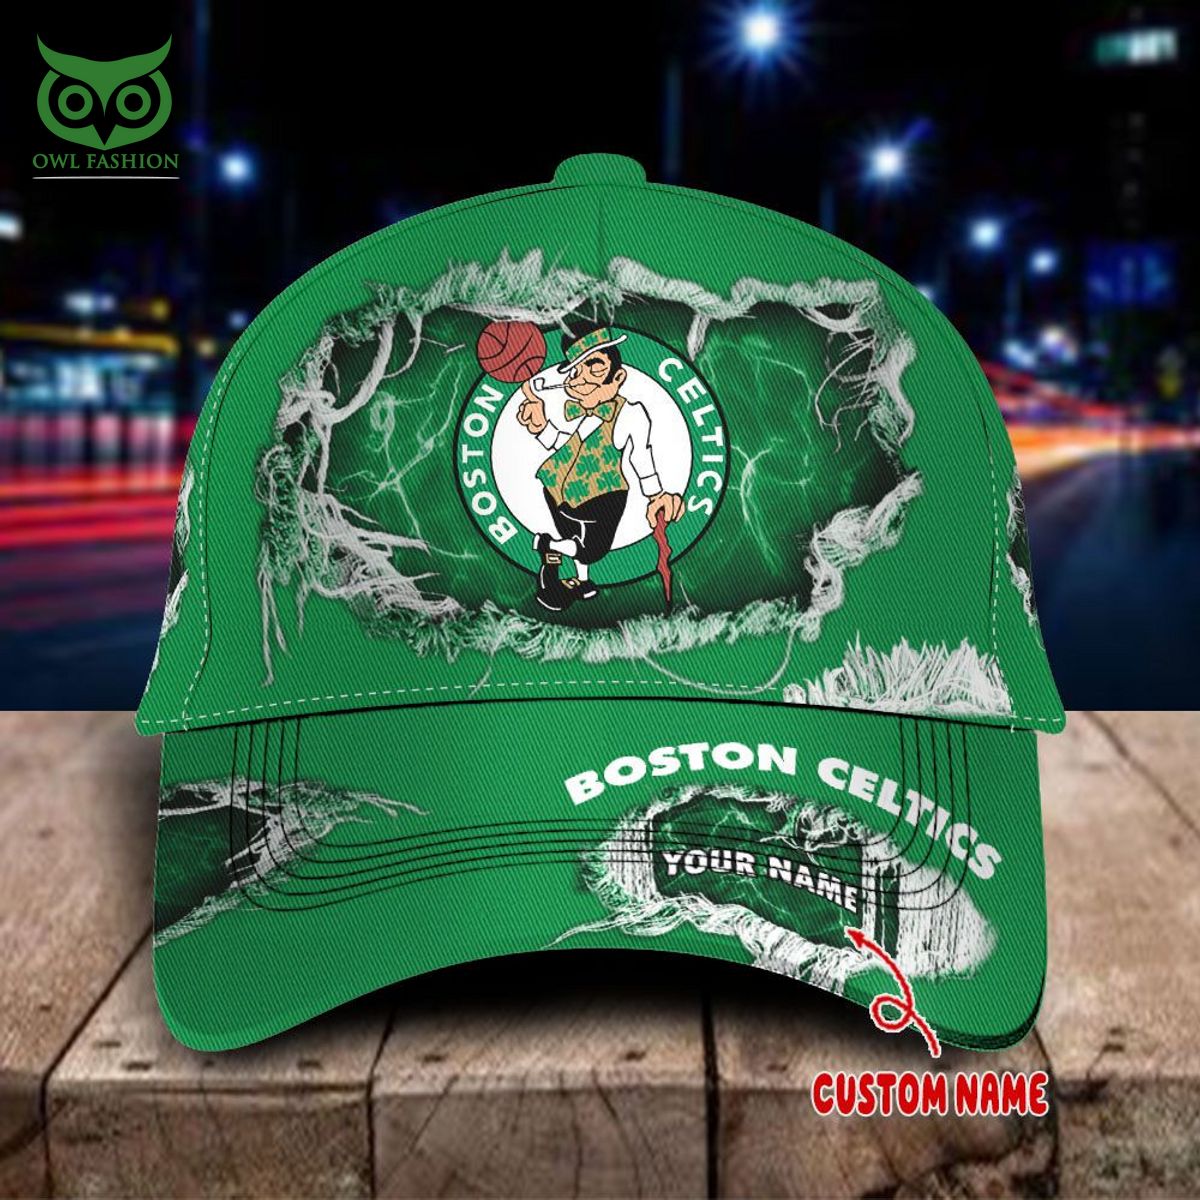 boston celtics nba champion personalized classic cap 1 xkv0f.jpg